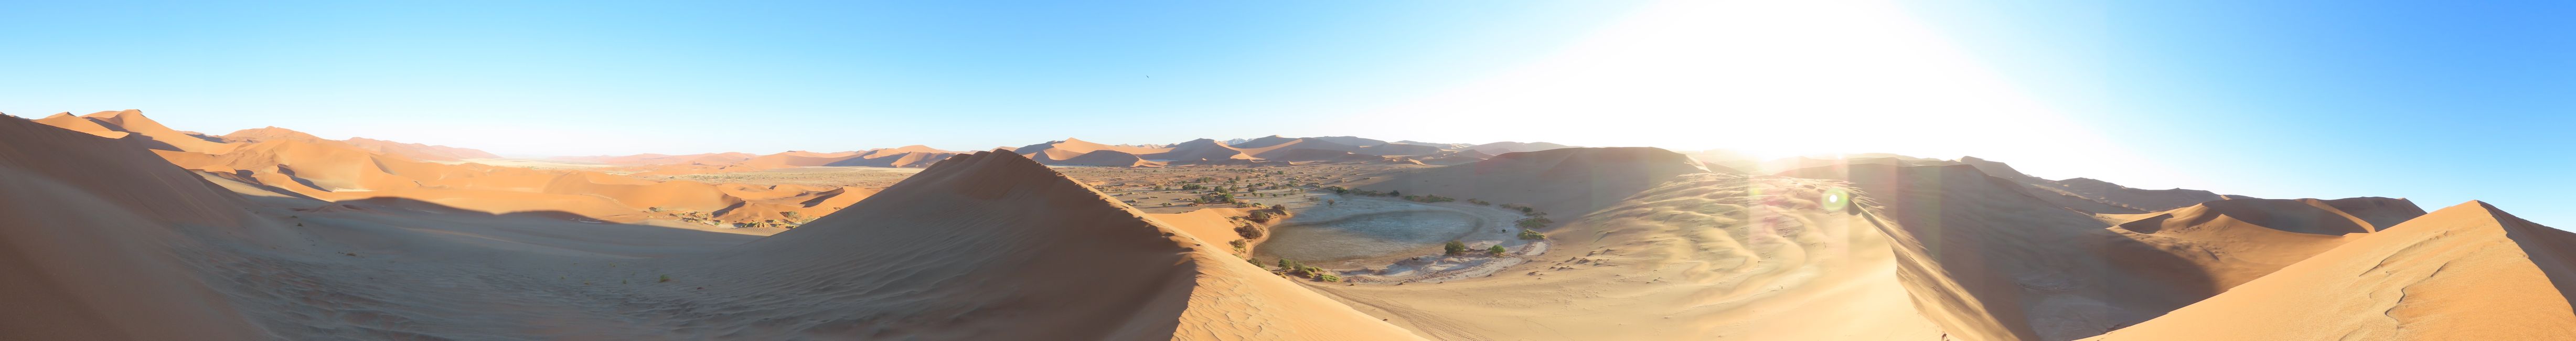 In the desert: The Sossusvlei dune in Sesriem National Park